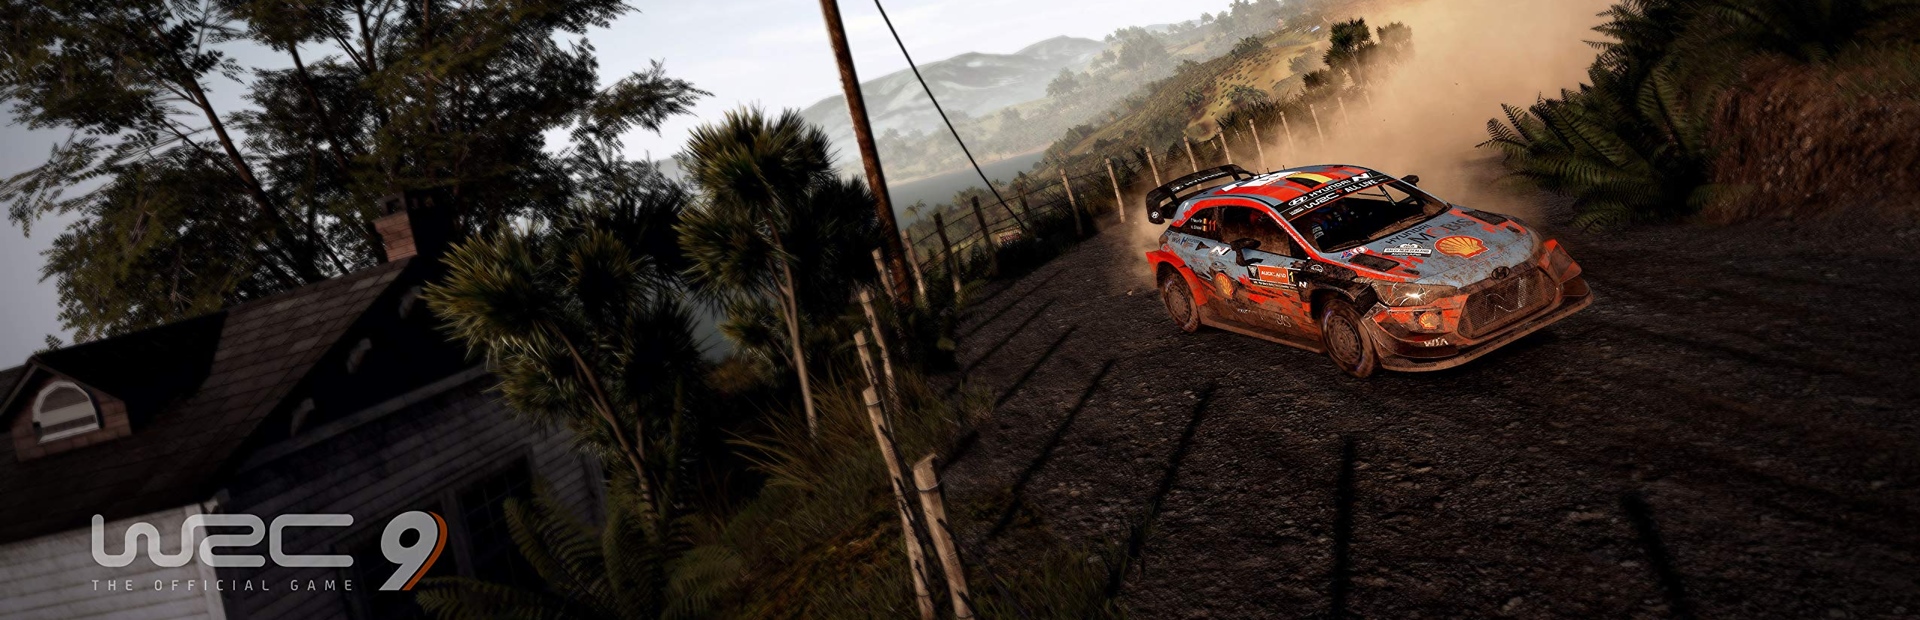 دانلود بازی WRC 9 FIA World Rally Championship برای PC | گیمباتو